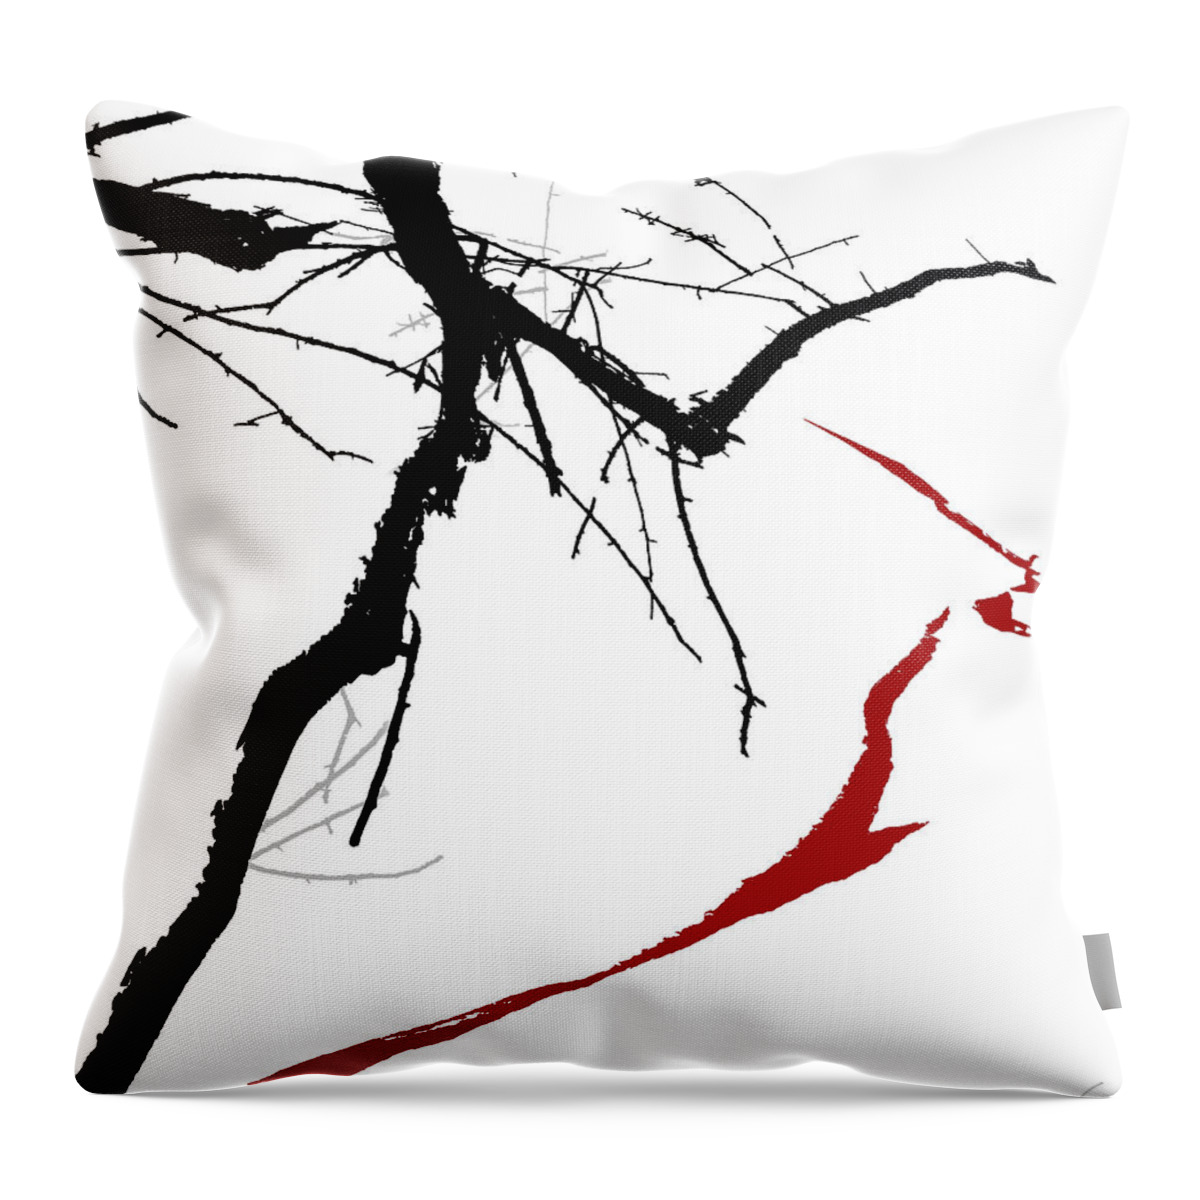 Branch Throw Pillow featuring the digital art Supernatural by Ken Walker